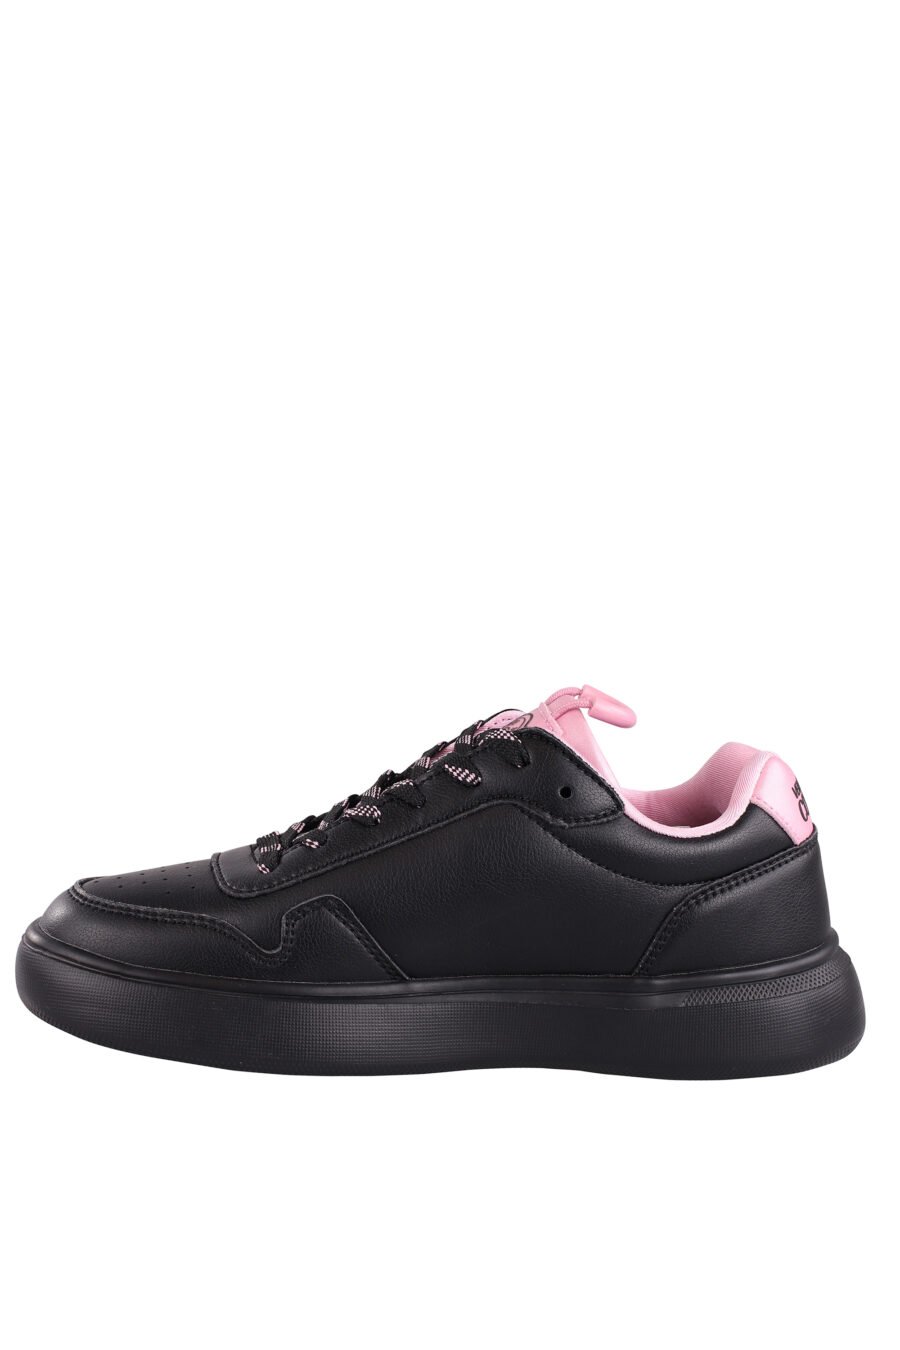 Zapatillas negras con detalles y logo rosa - IMG 9064